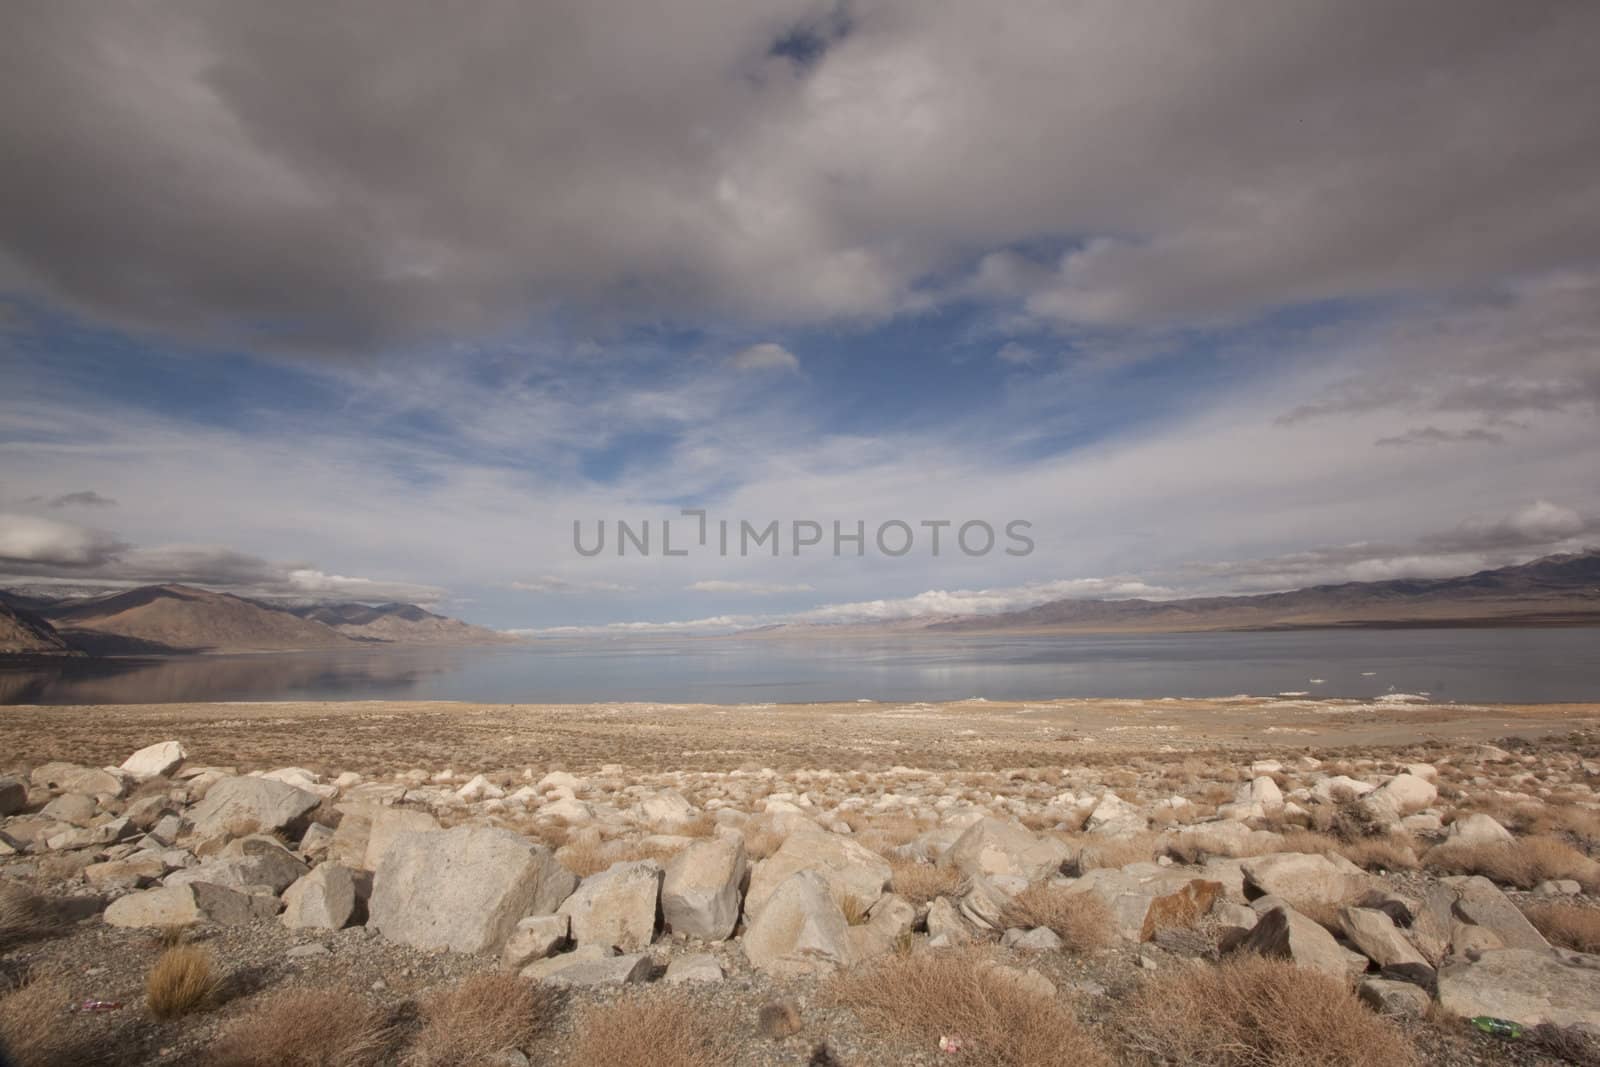 Desert range by a lake by jeremywhat